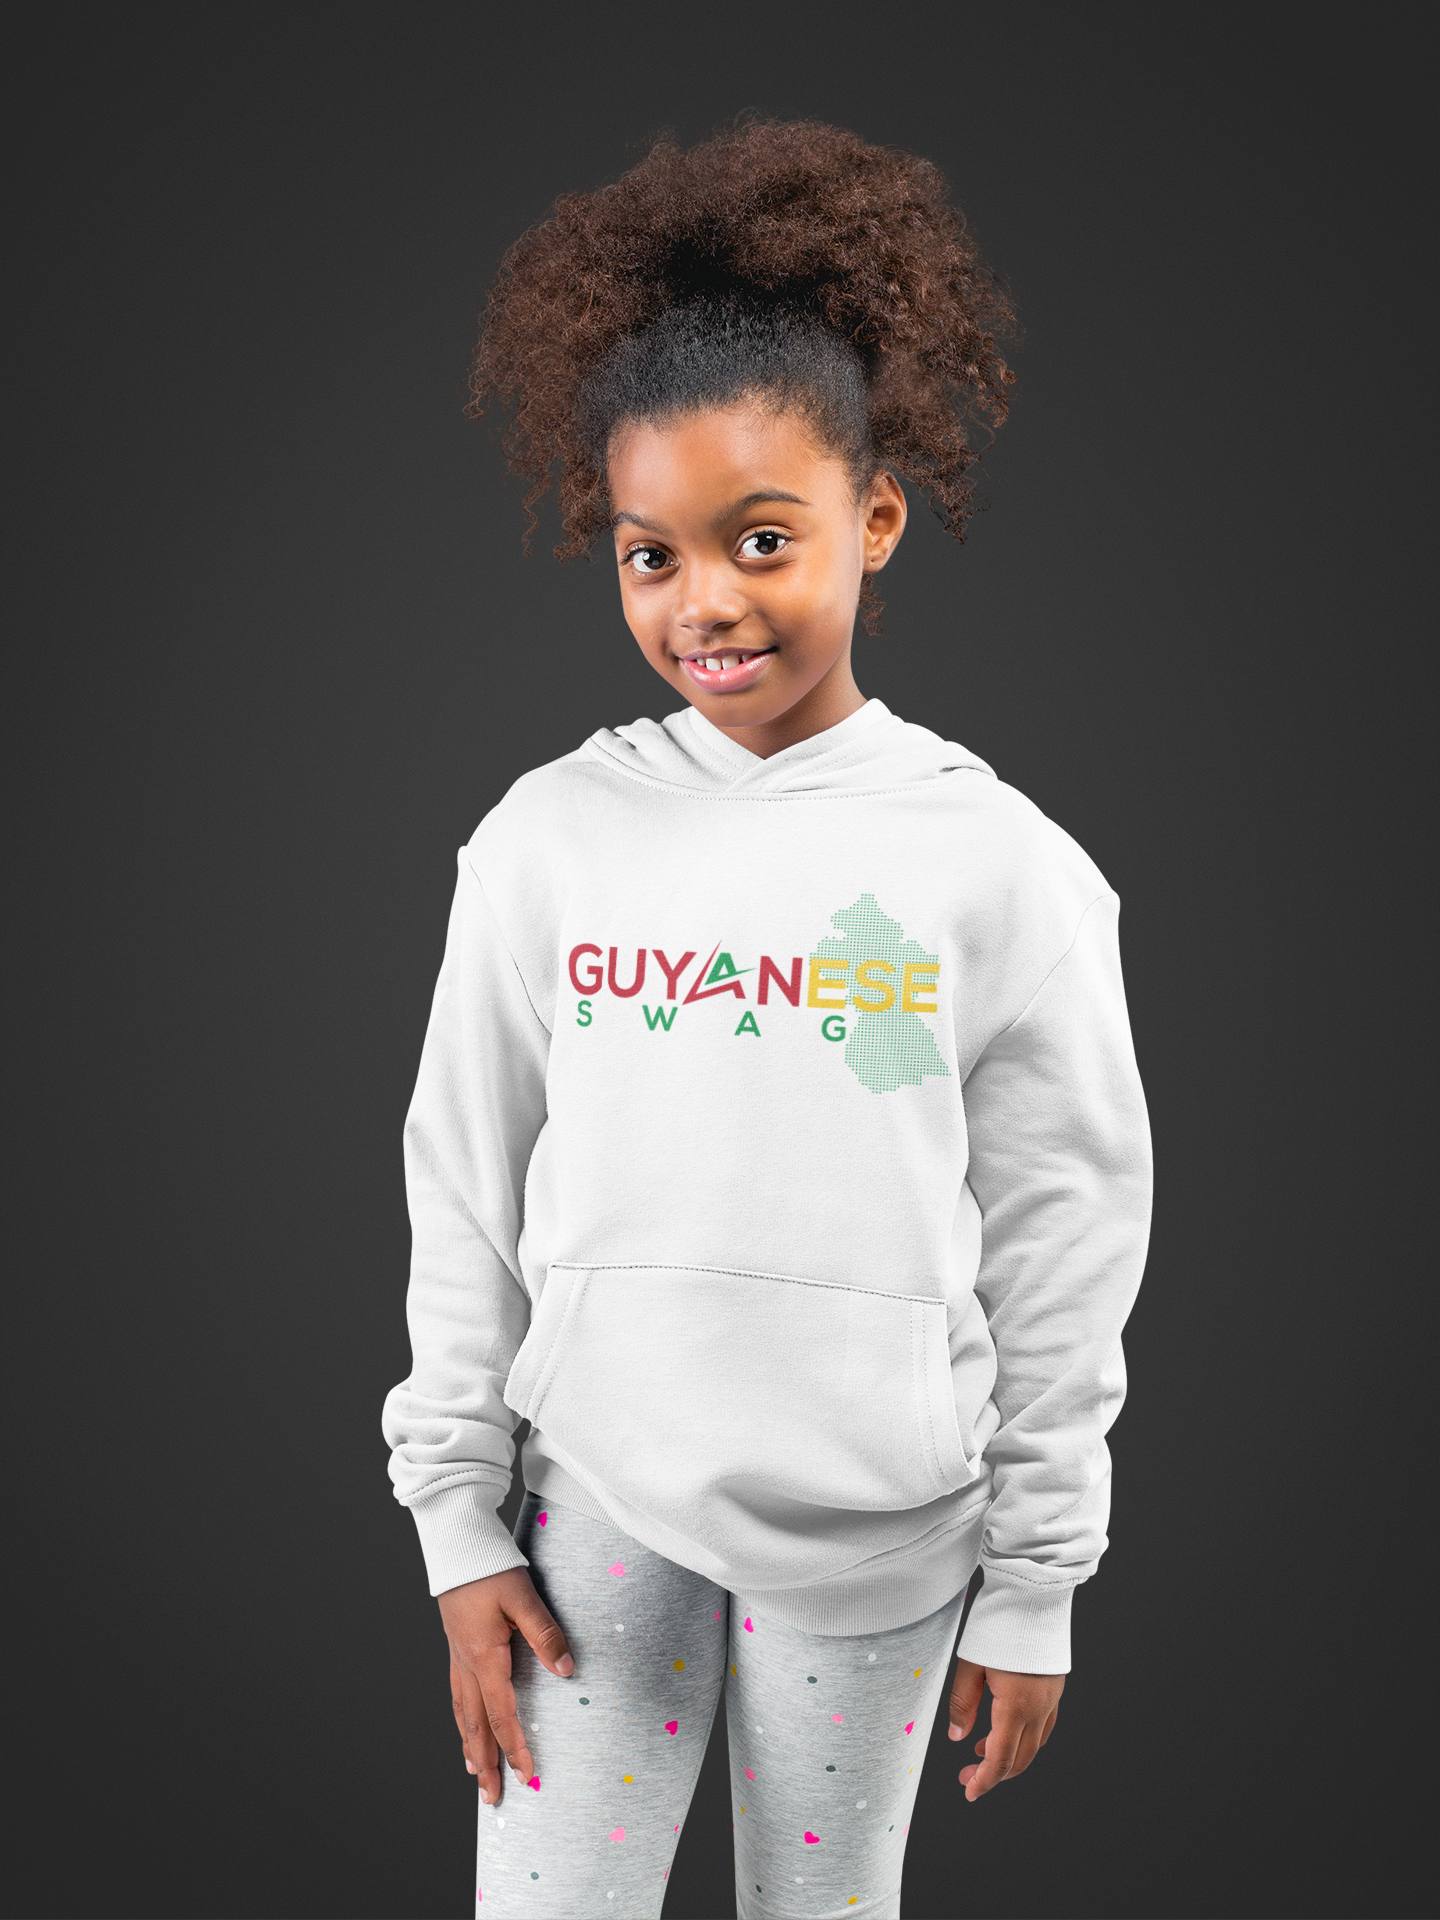 Guyanese Swag Guyana Map Unisex Kids Hoodie